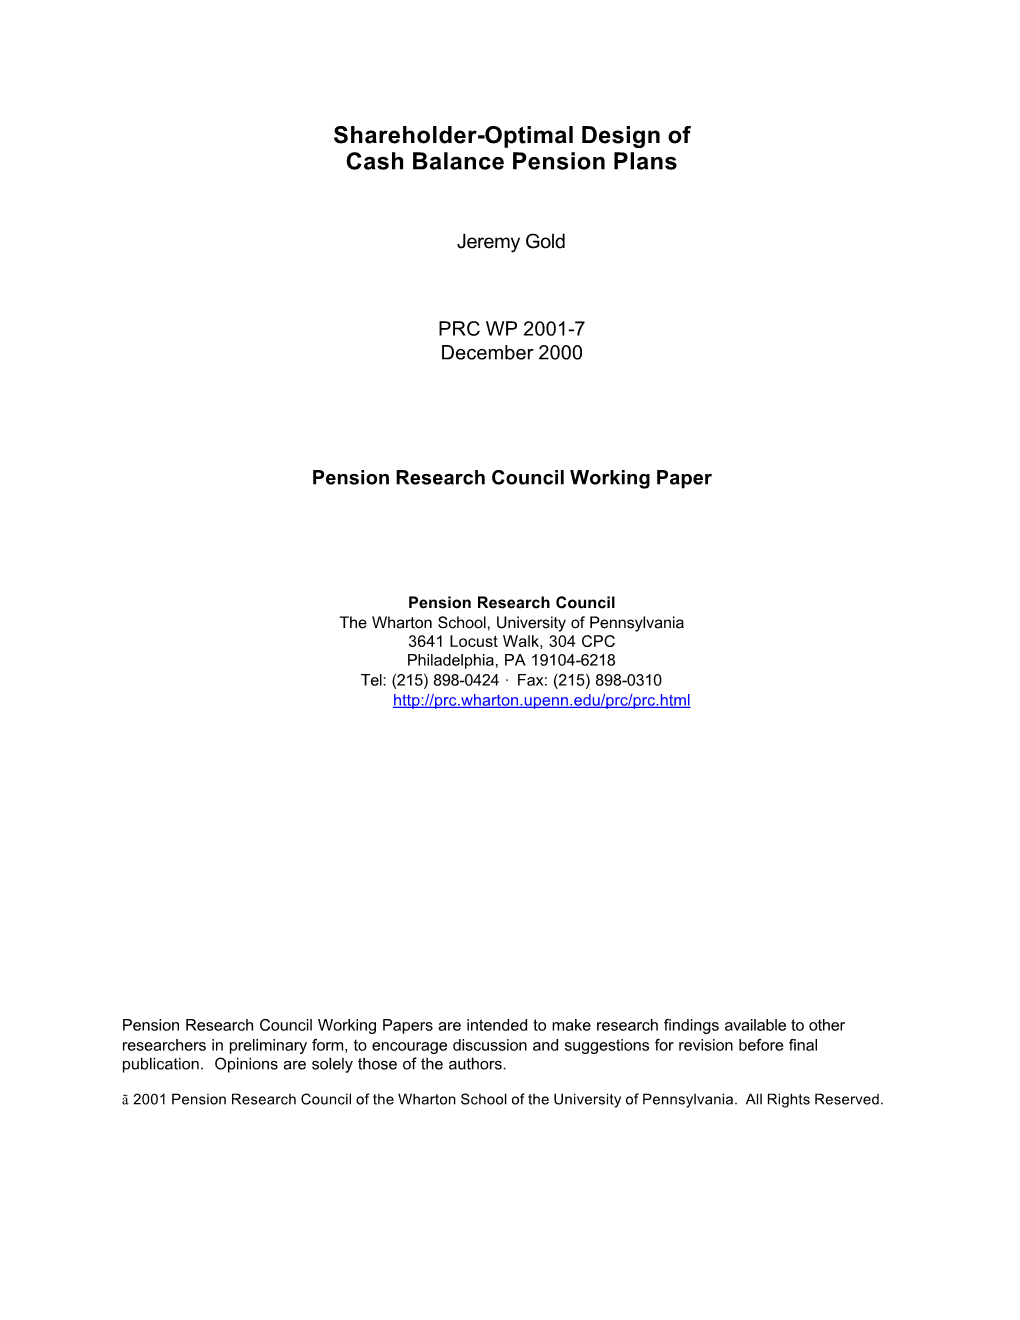 Shareholder-Optimal Design of Cash Balance Pension Plans